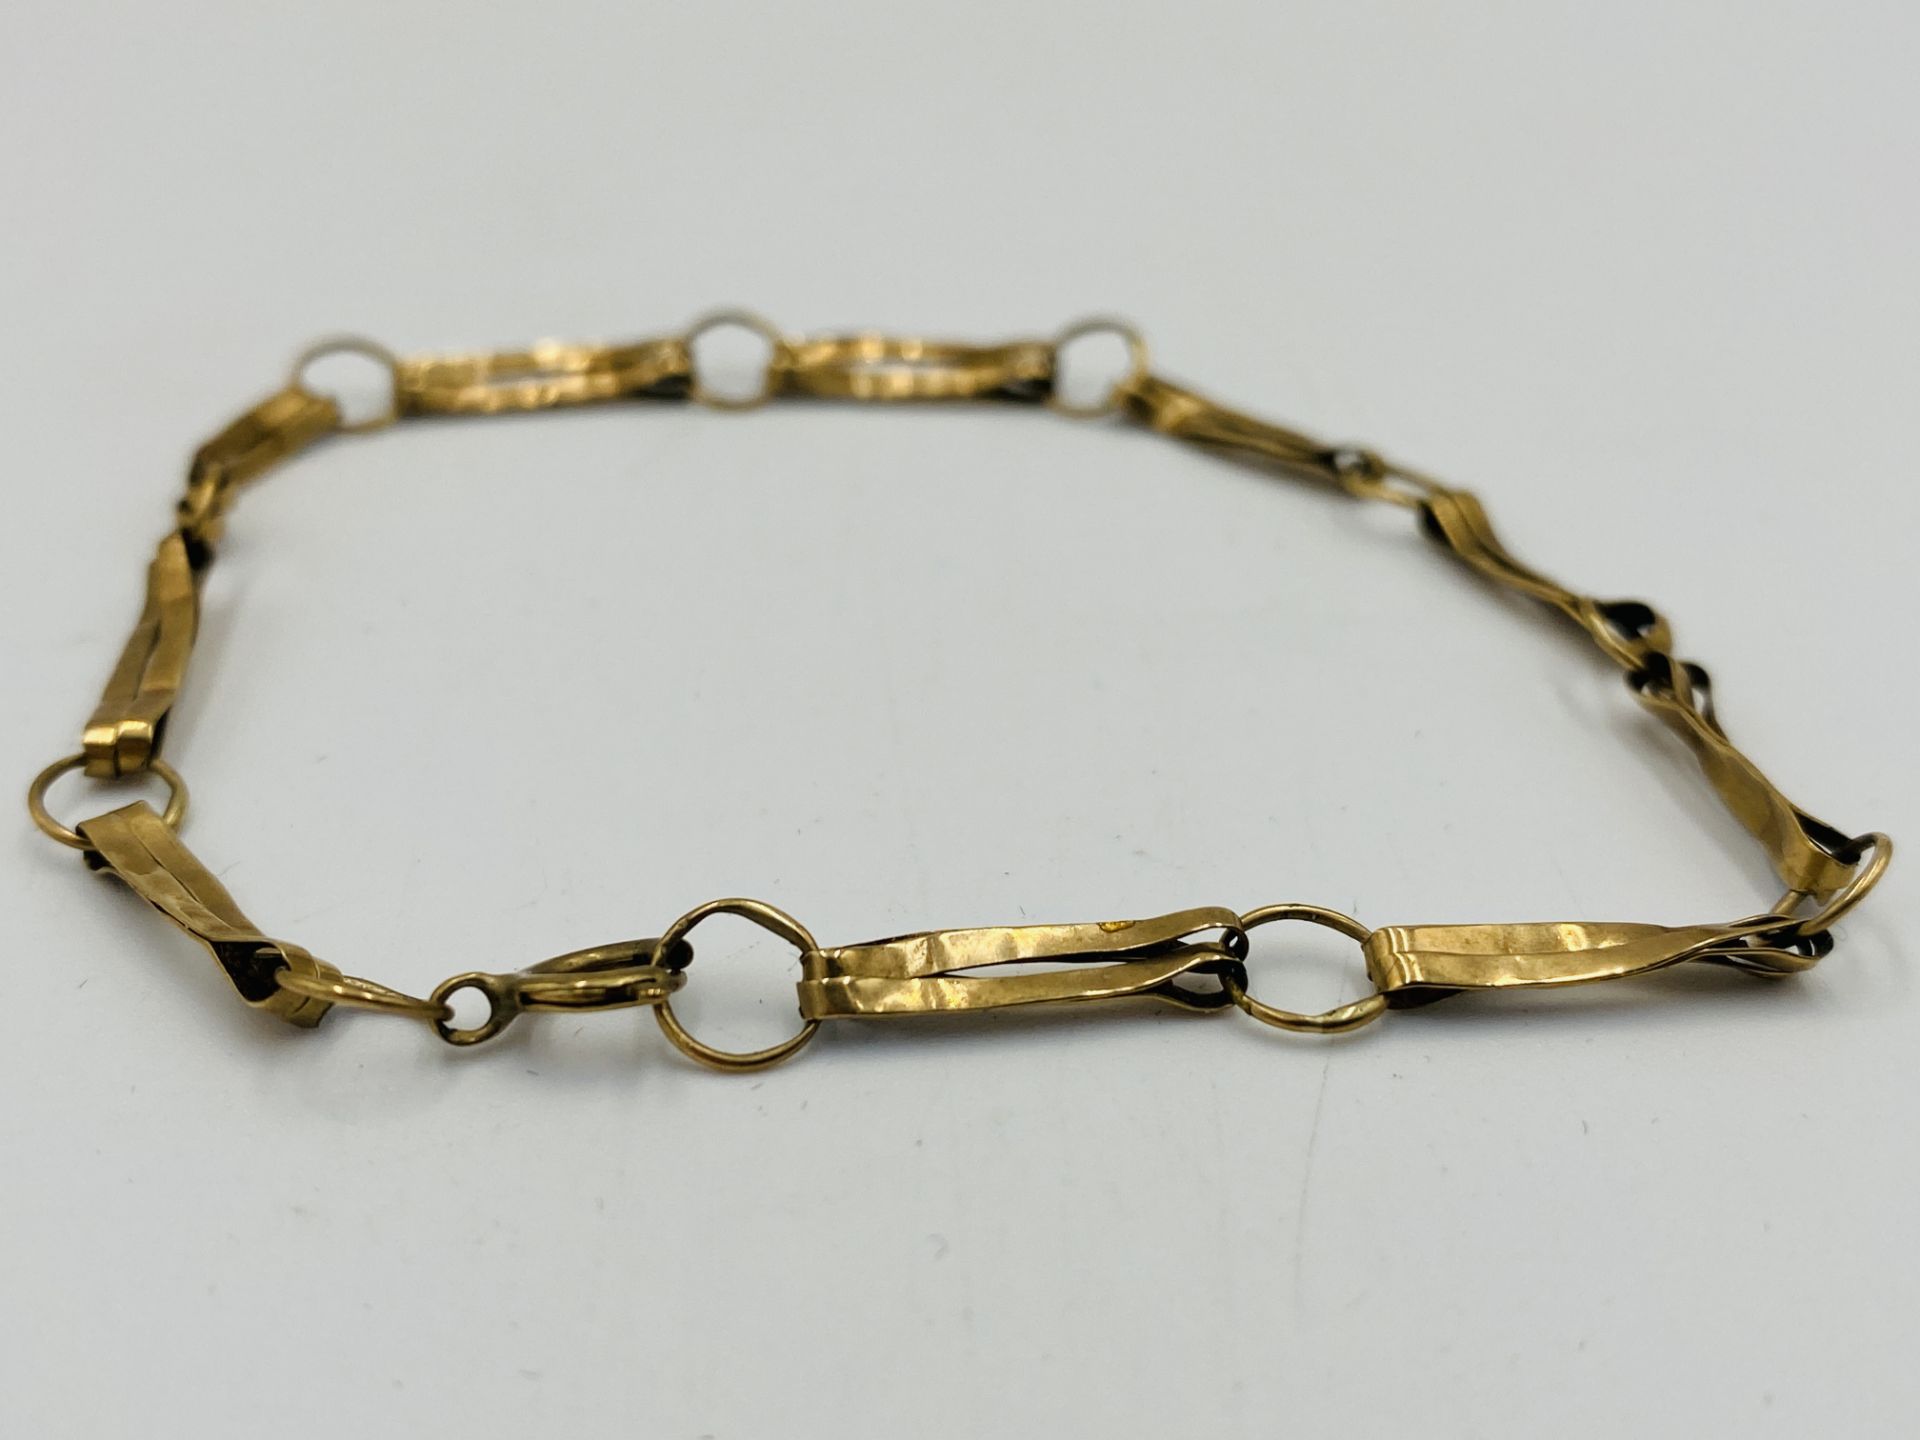 9ct gold bracelet - Image 4 of 4